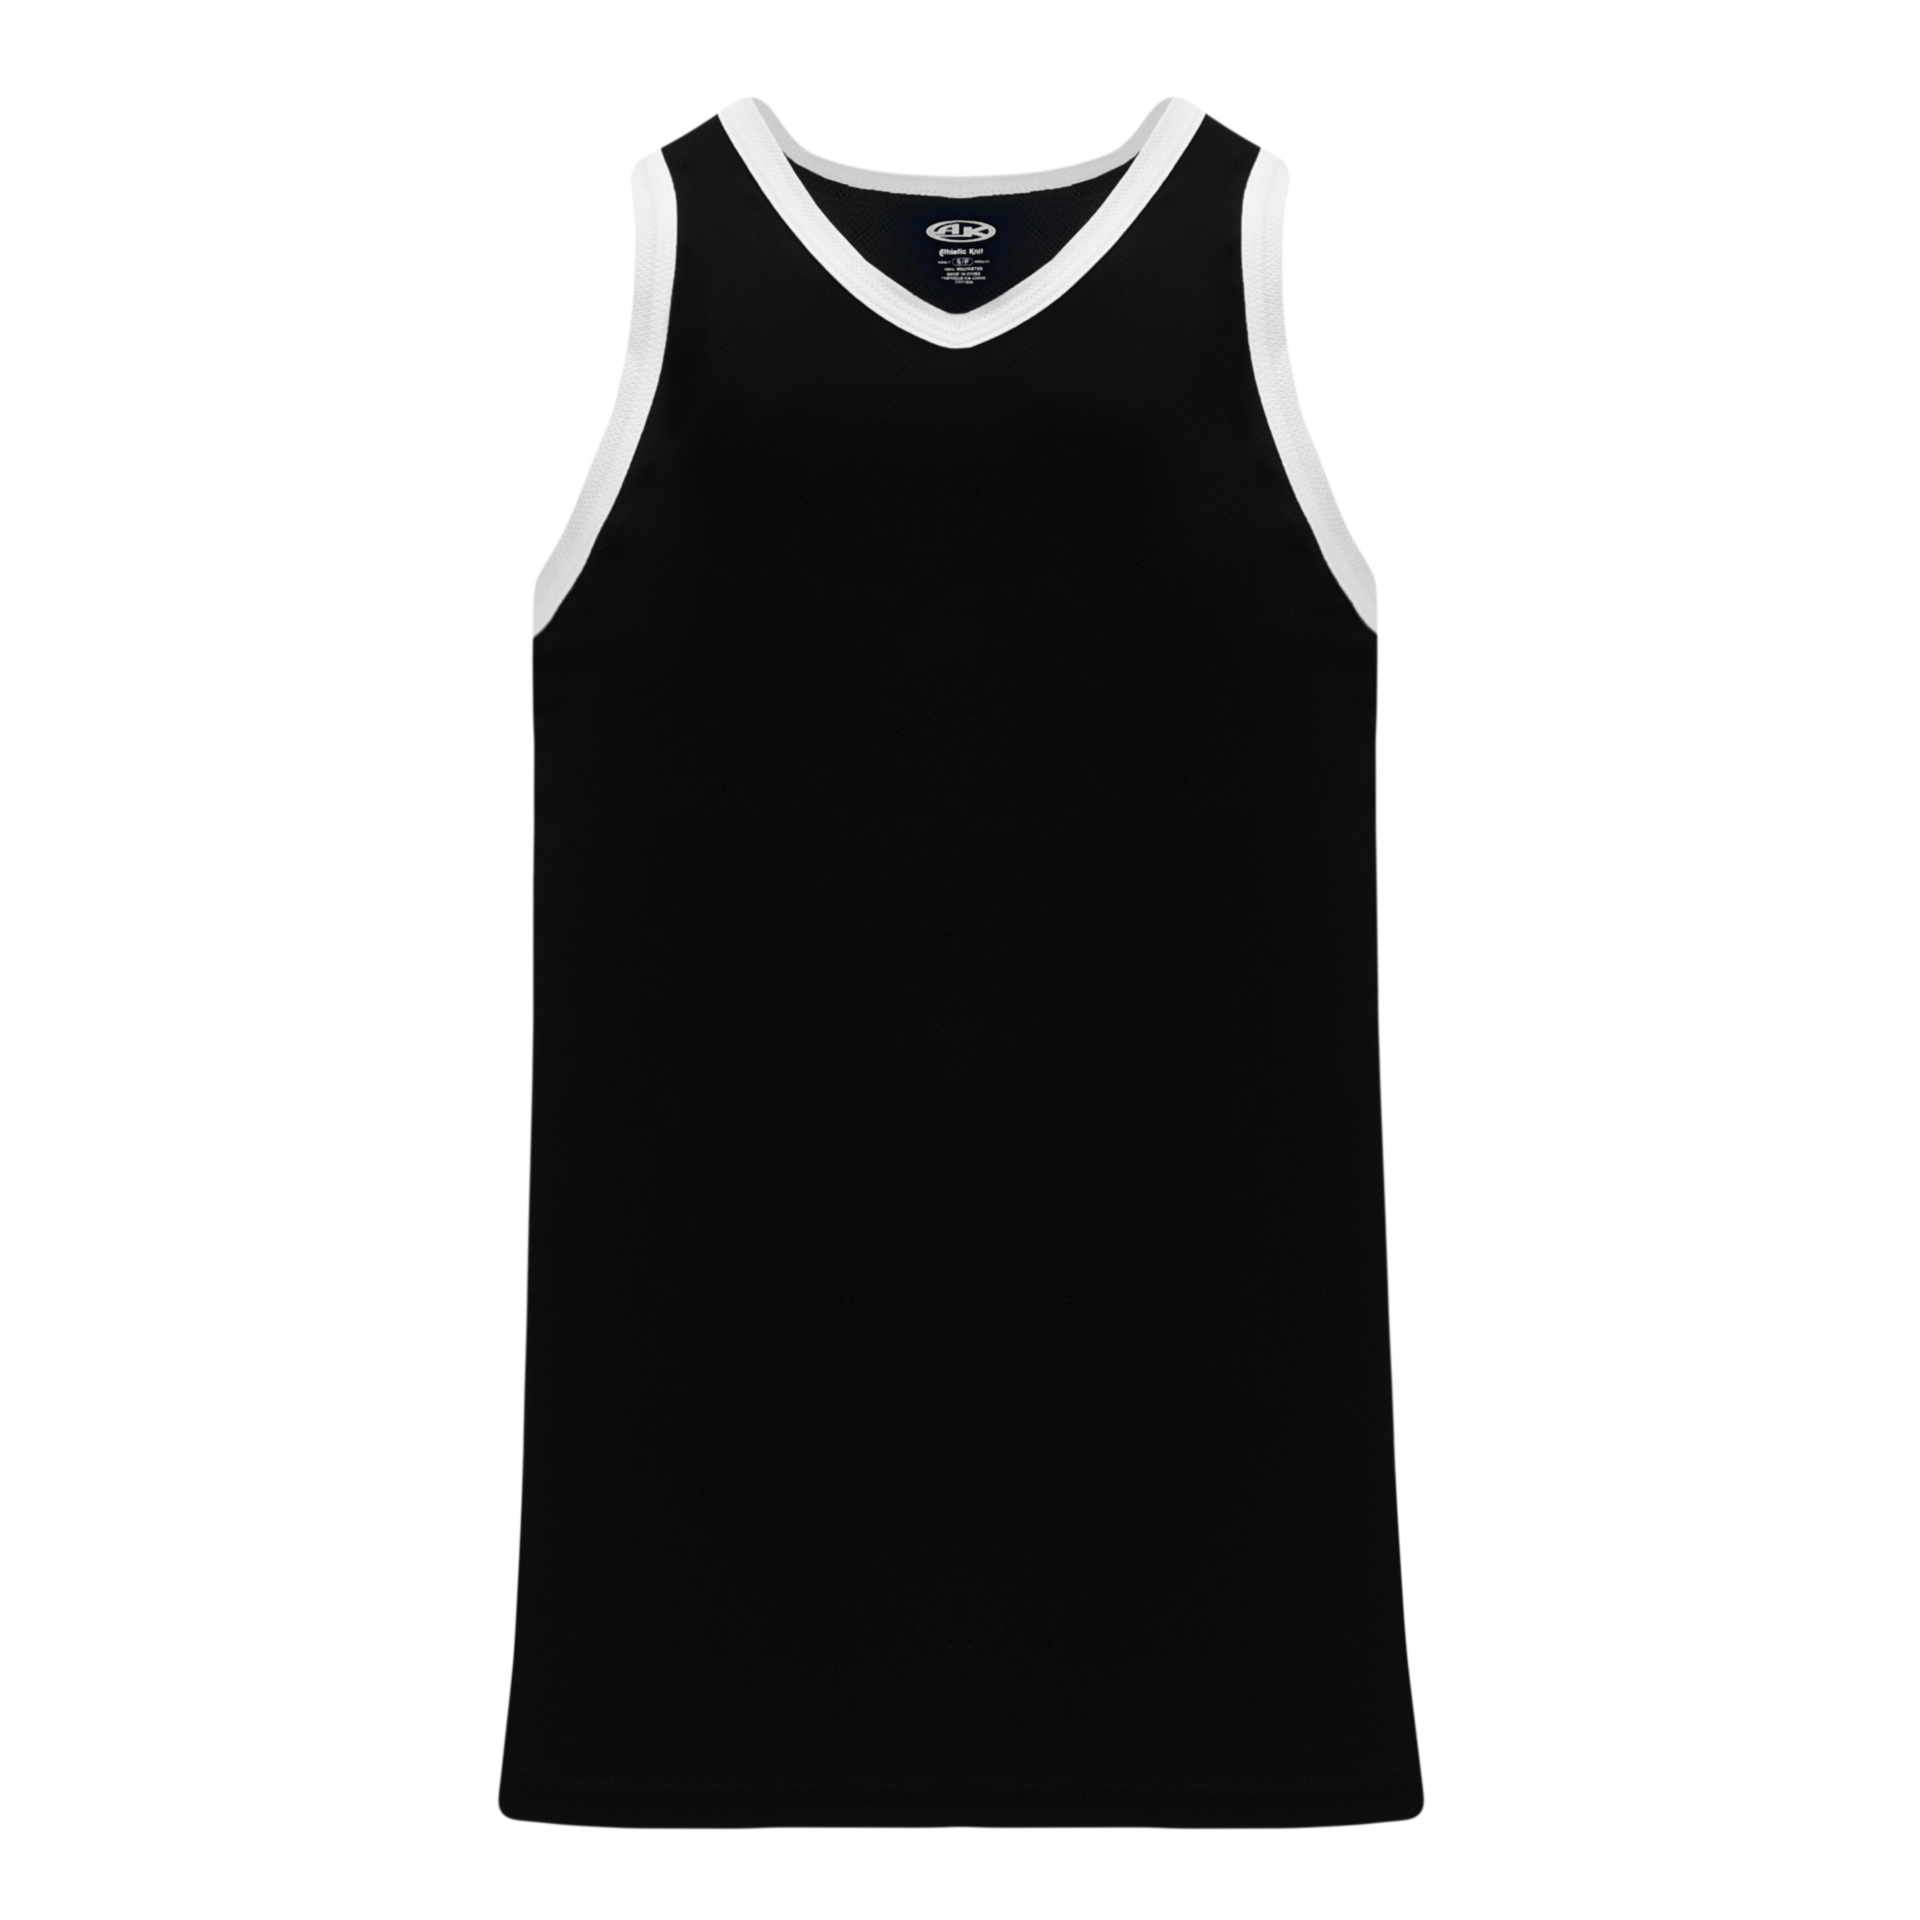 Athletic Knit (AK) B1325L-221 Ladies Black/White League Basketball